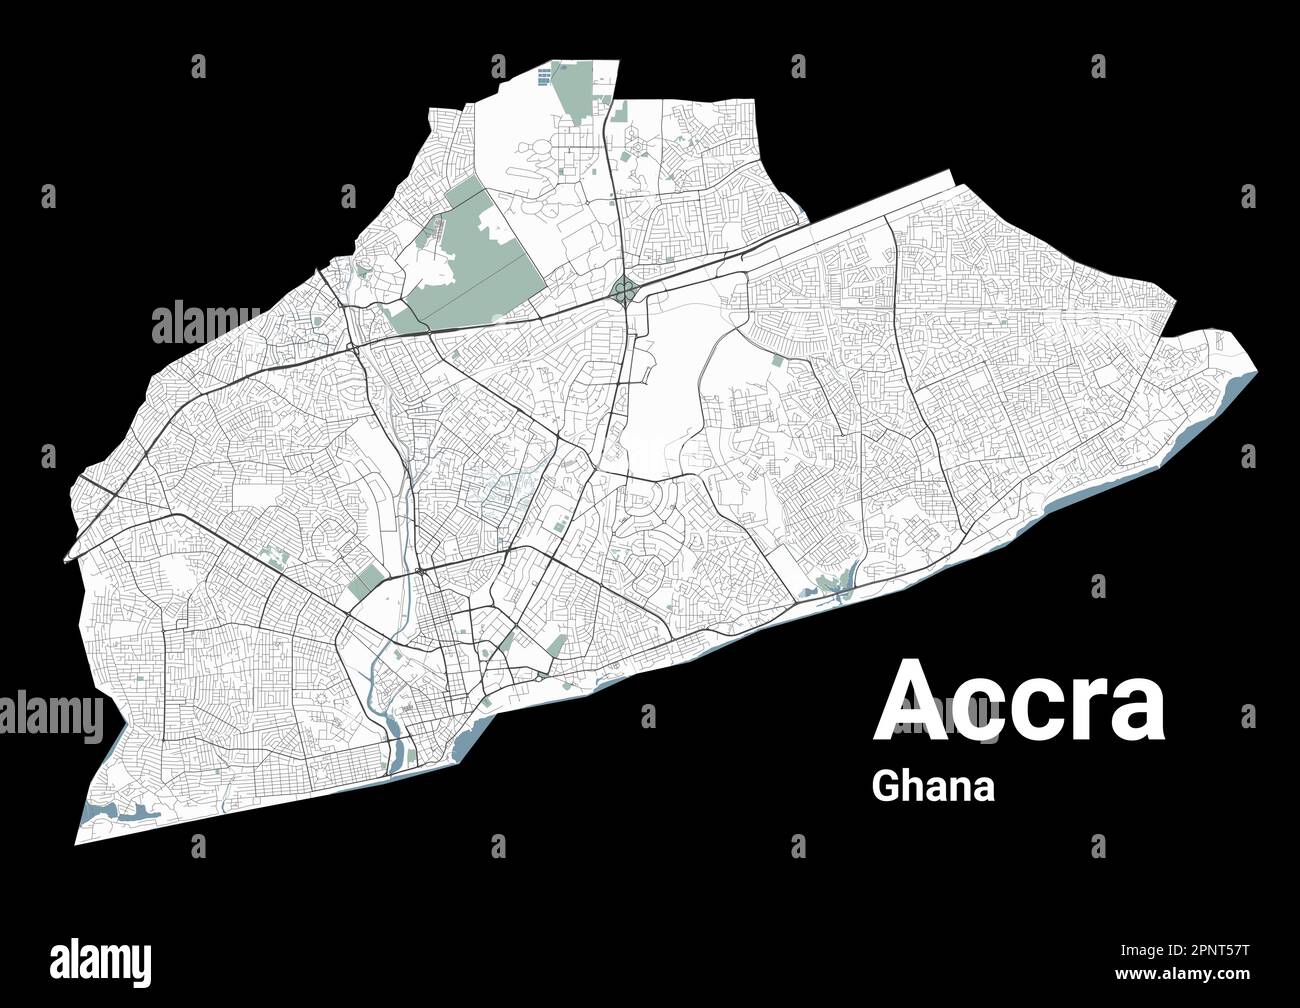 Accra mappa, capitale del Ghana. Mappa amministrativa comunale con fiumi e strade, parchi e ferrovie. Illustrazione vettoriale. Illustrazione Vettoriale